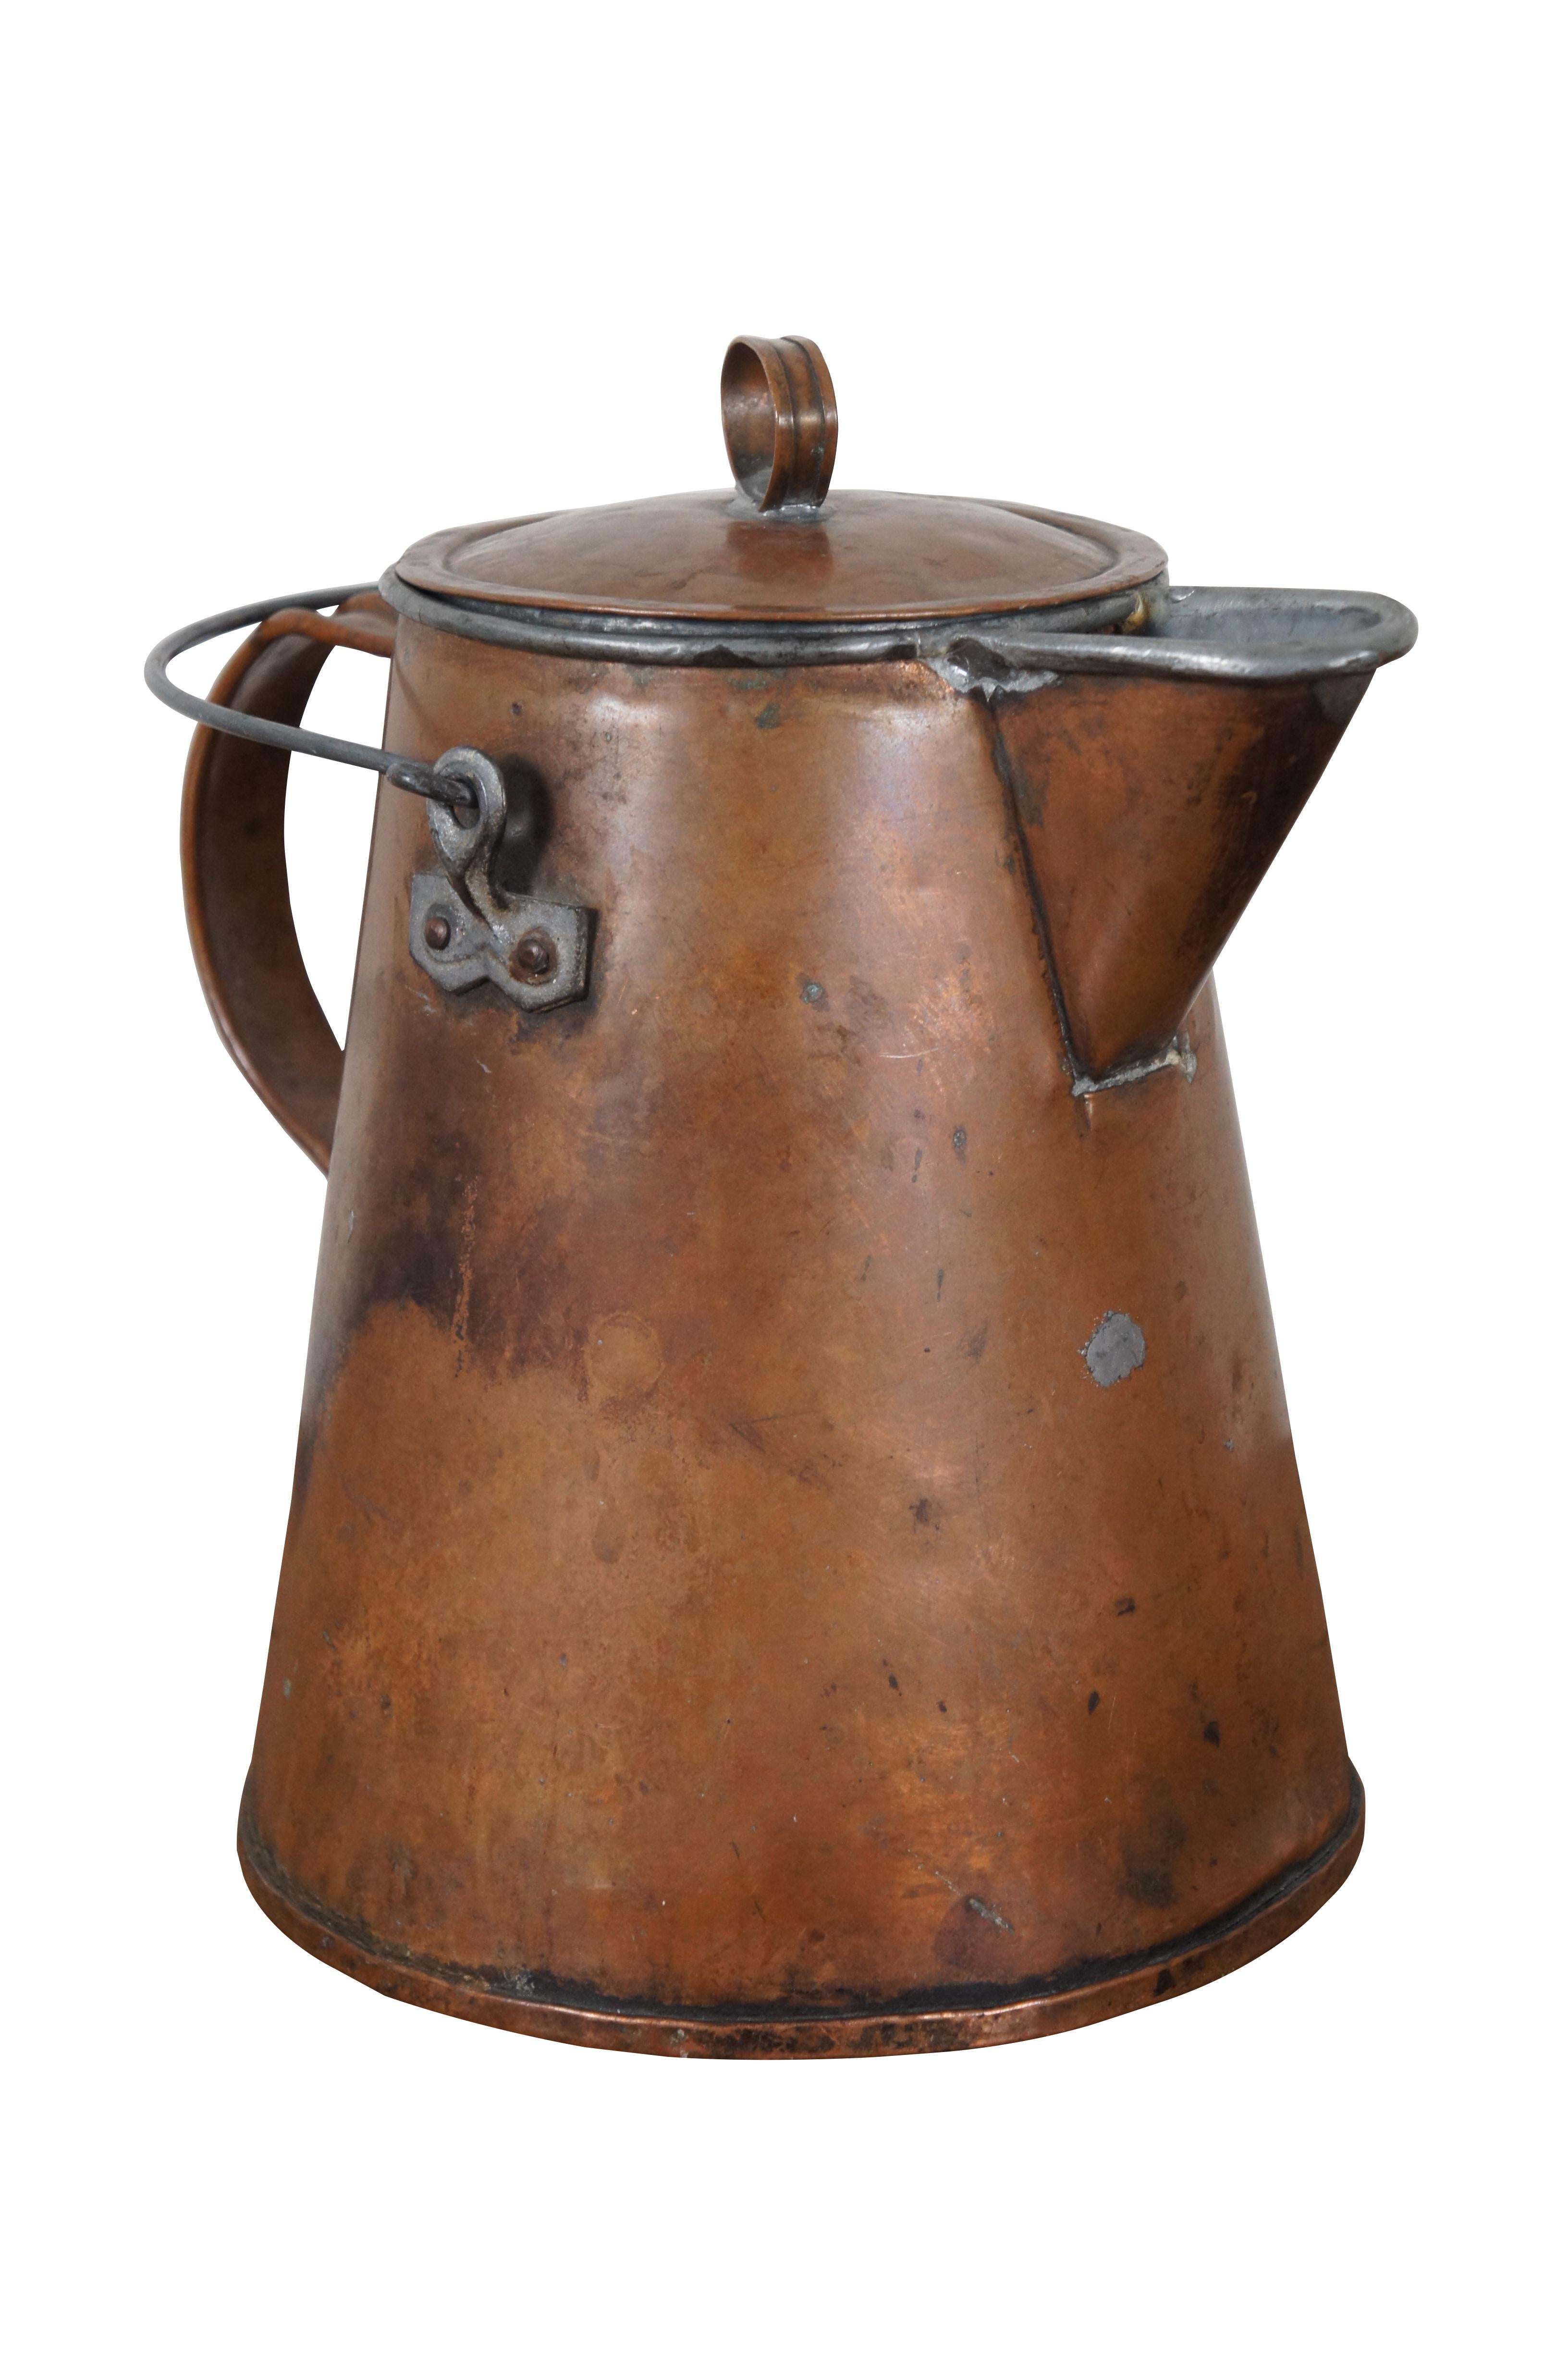 Rustique Primitive Antique Copper Tea Pot Coffee Kettle Cowboy Farmhouse Teapot 11